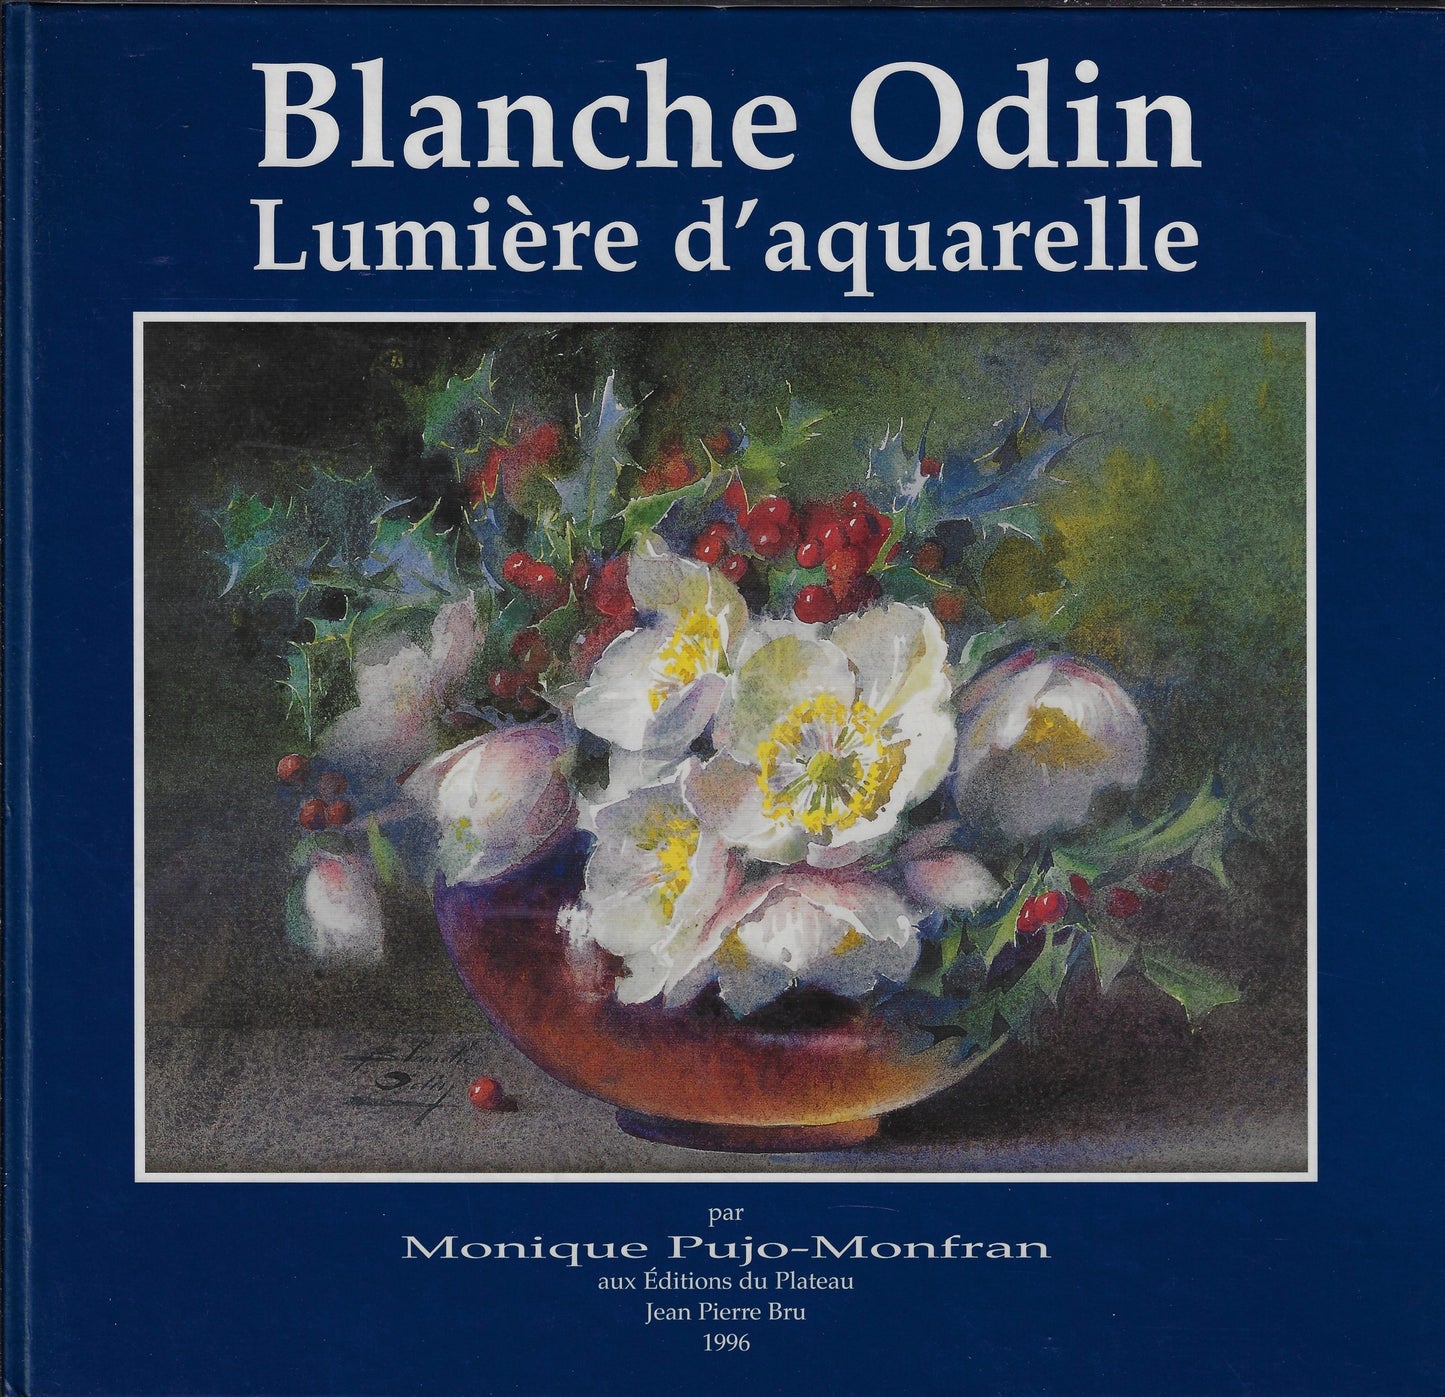 Blanche Odin lumière d'aquarelle